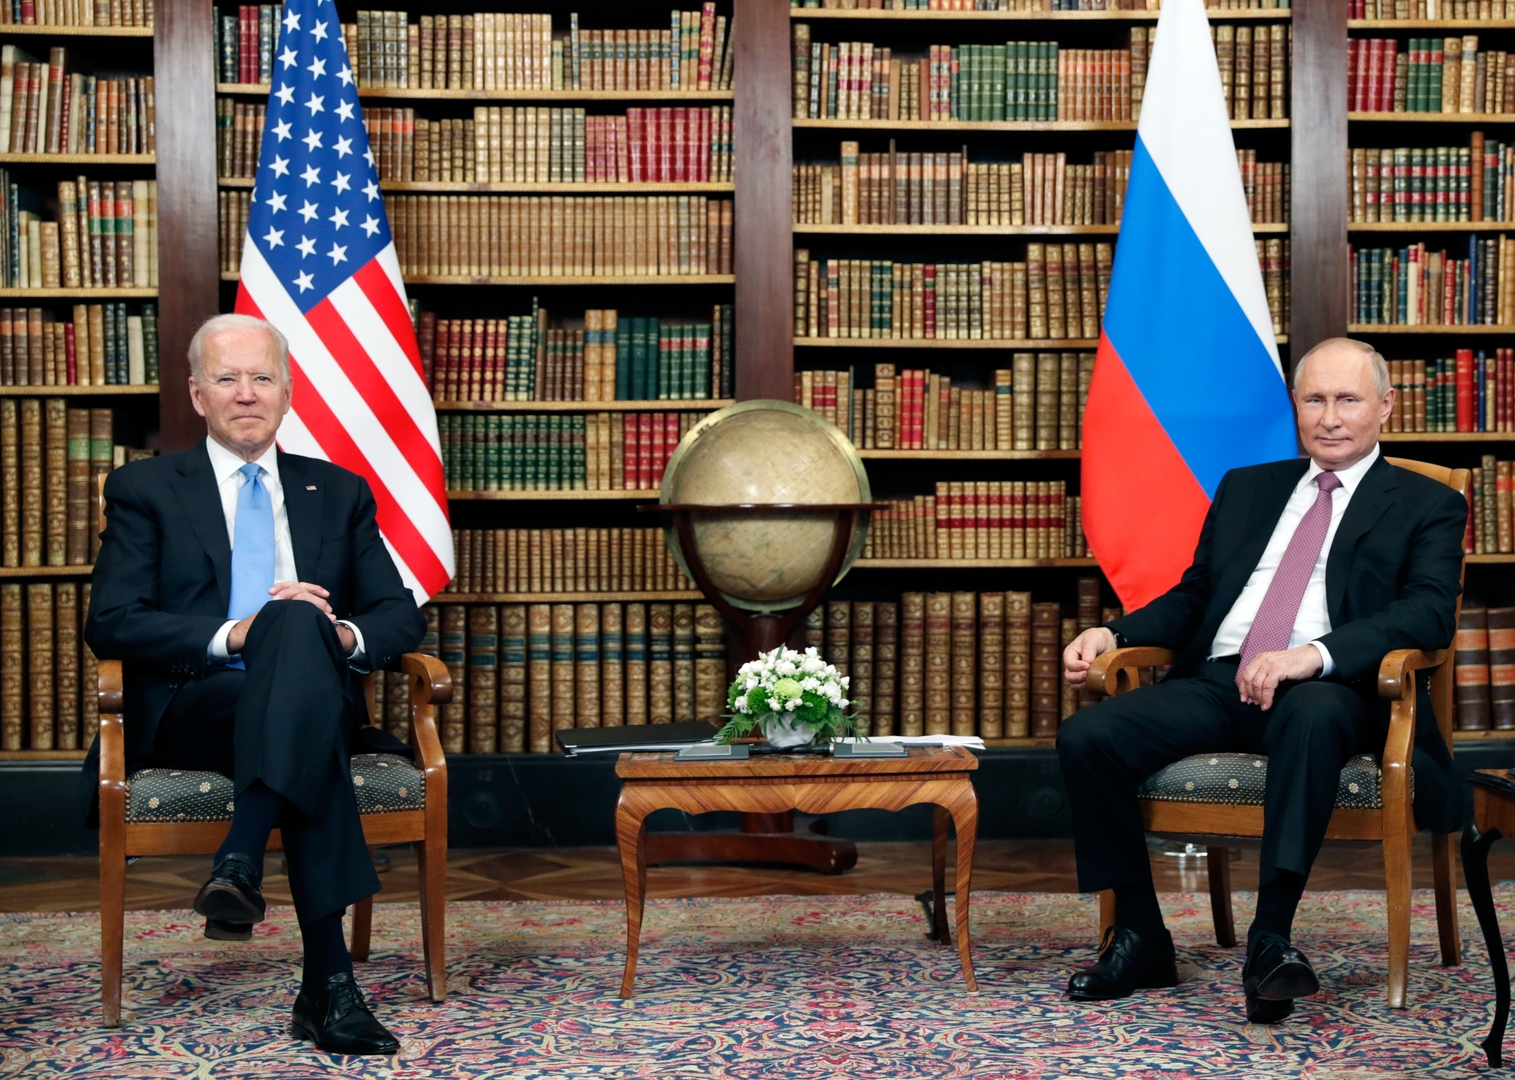 بوتين وبايدن: روسيا والولايات المتحدة بصدد إطلاق حوار ثنائي شامل حول الاستقرار الاستراتيجي